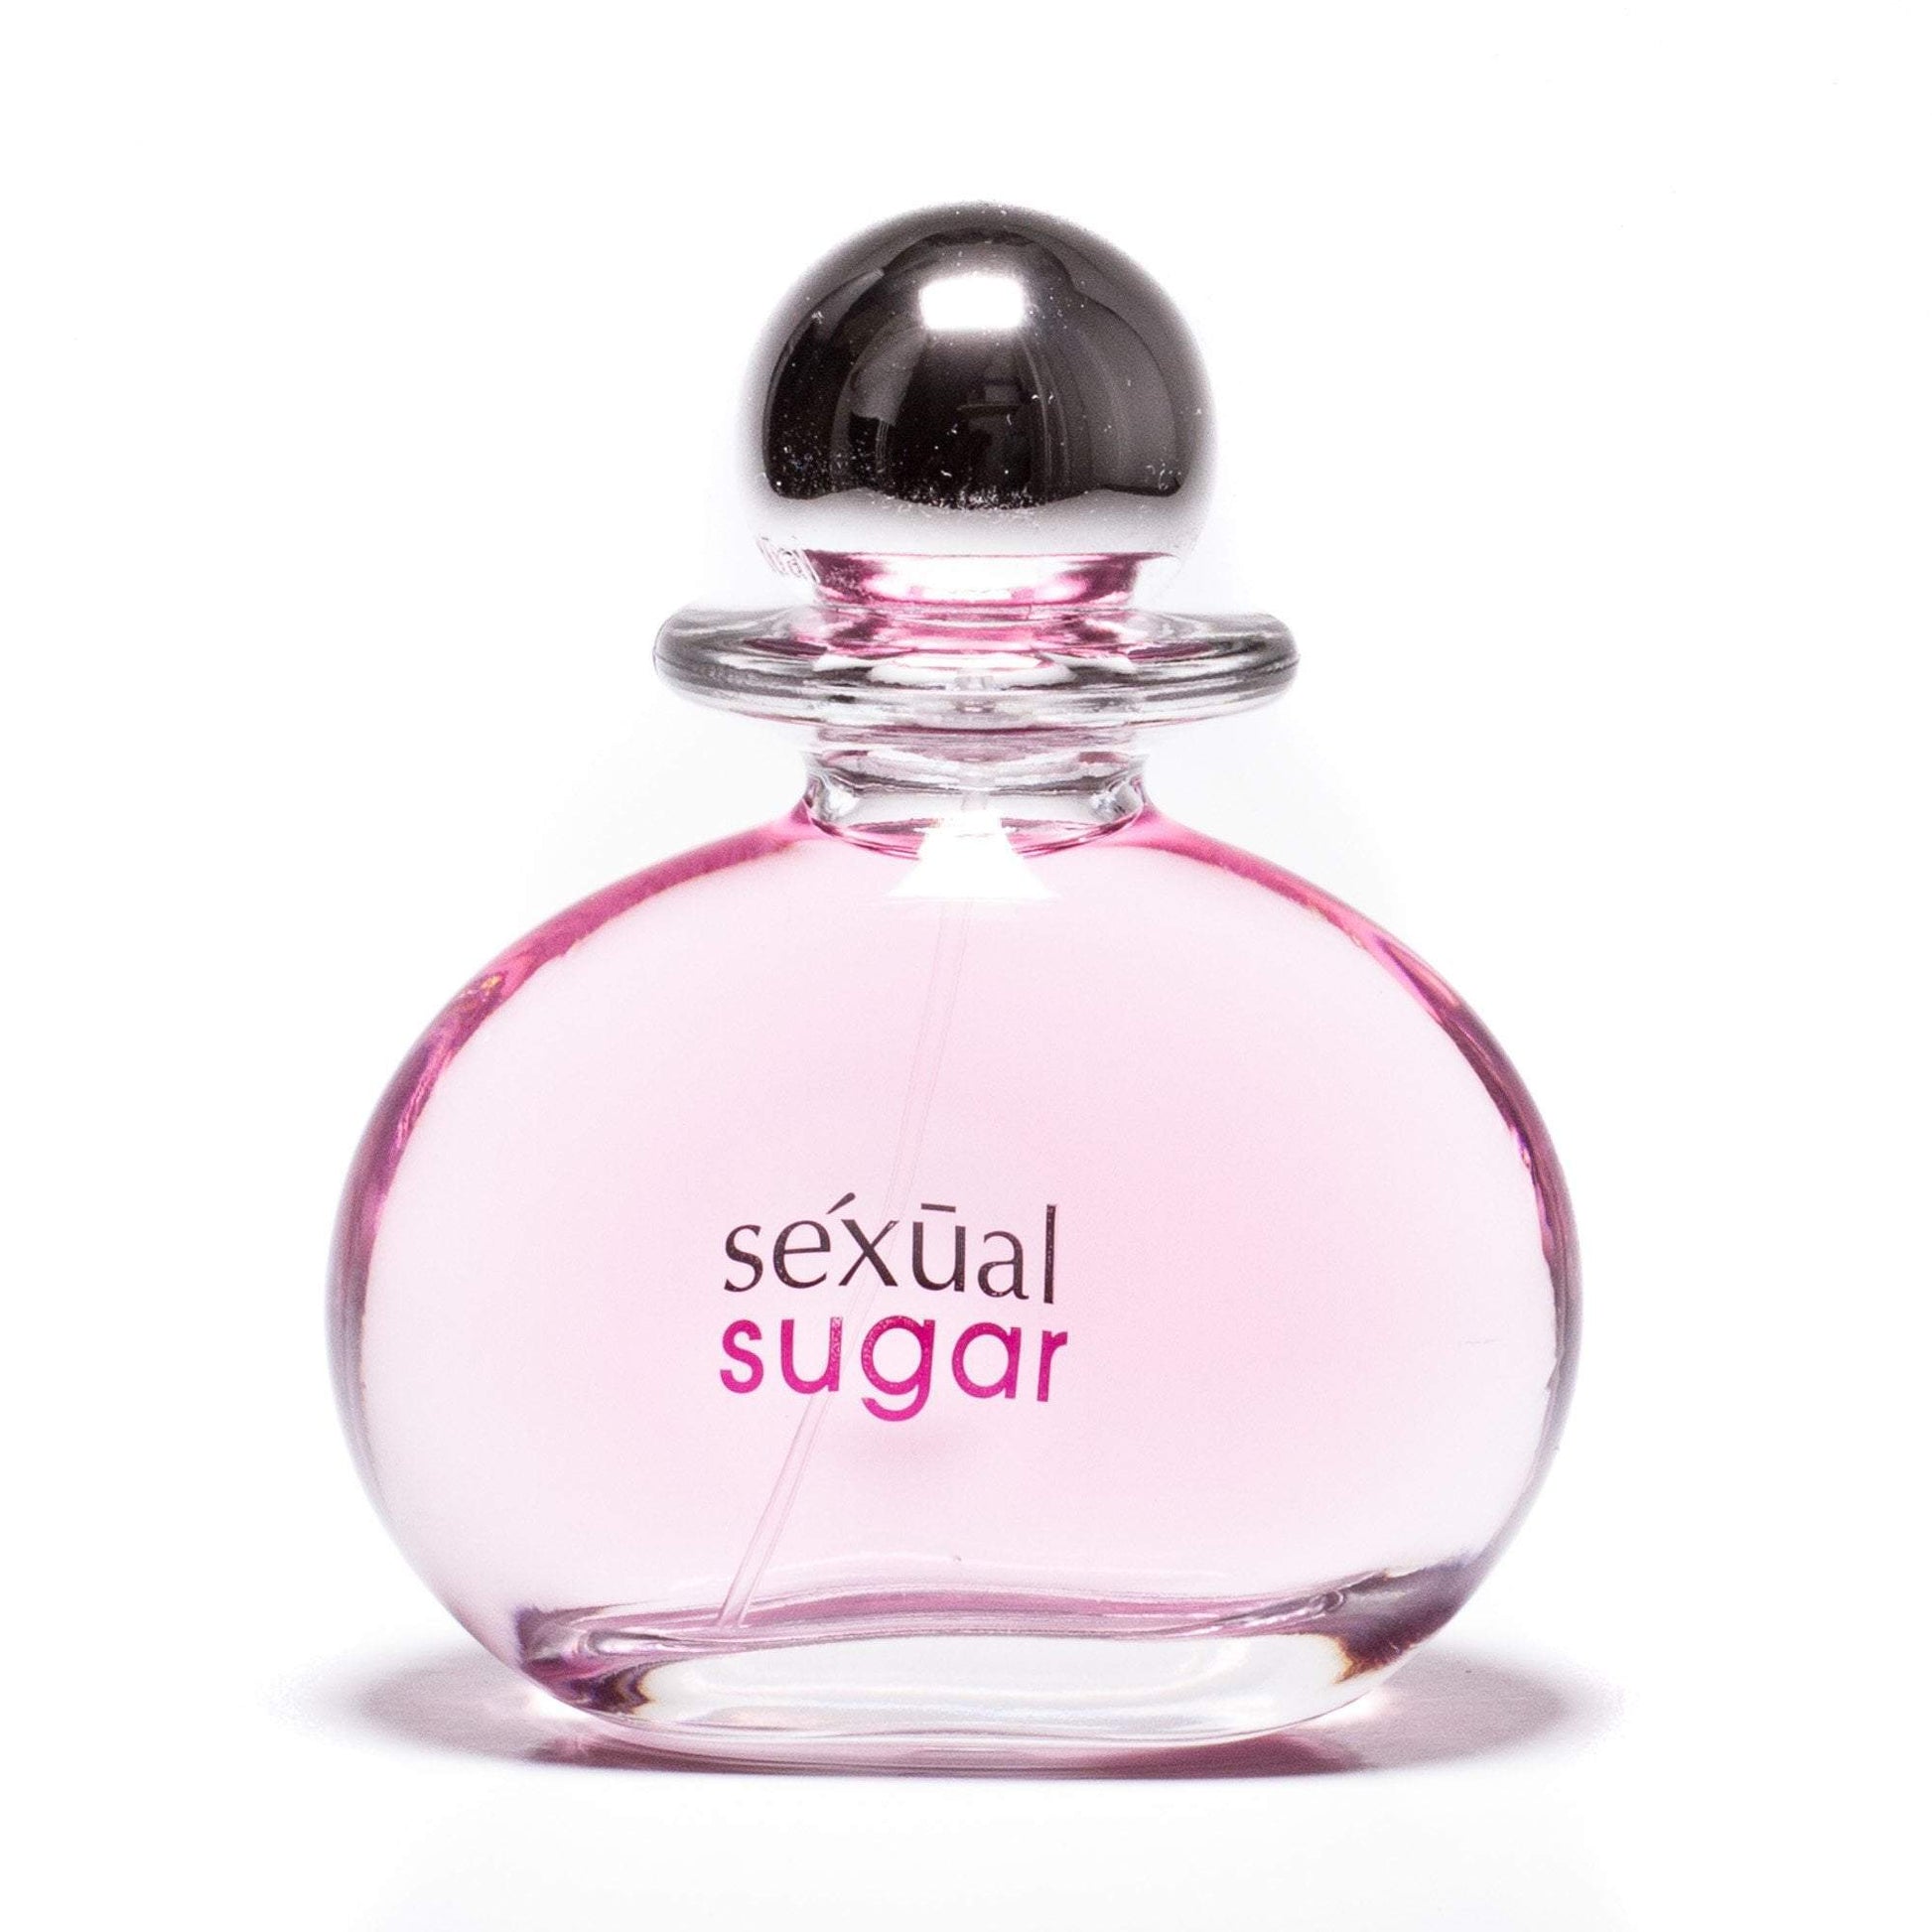 Sexual Sugar Eau de Parfum Spray for Women Click to open in modal